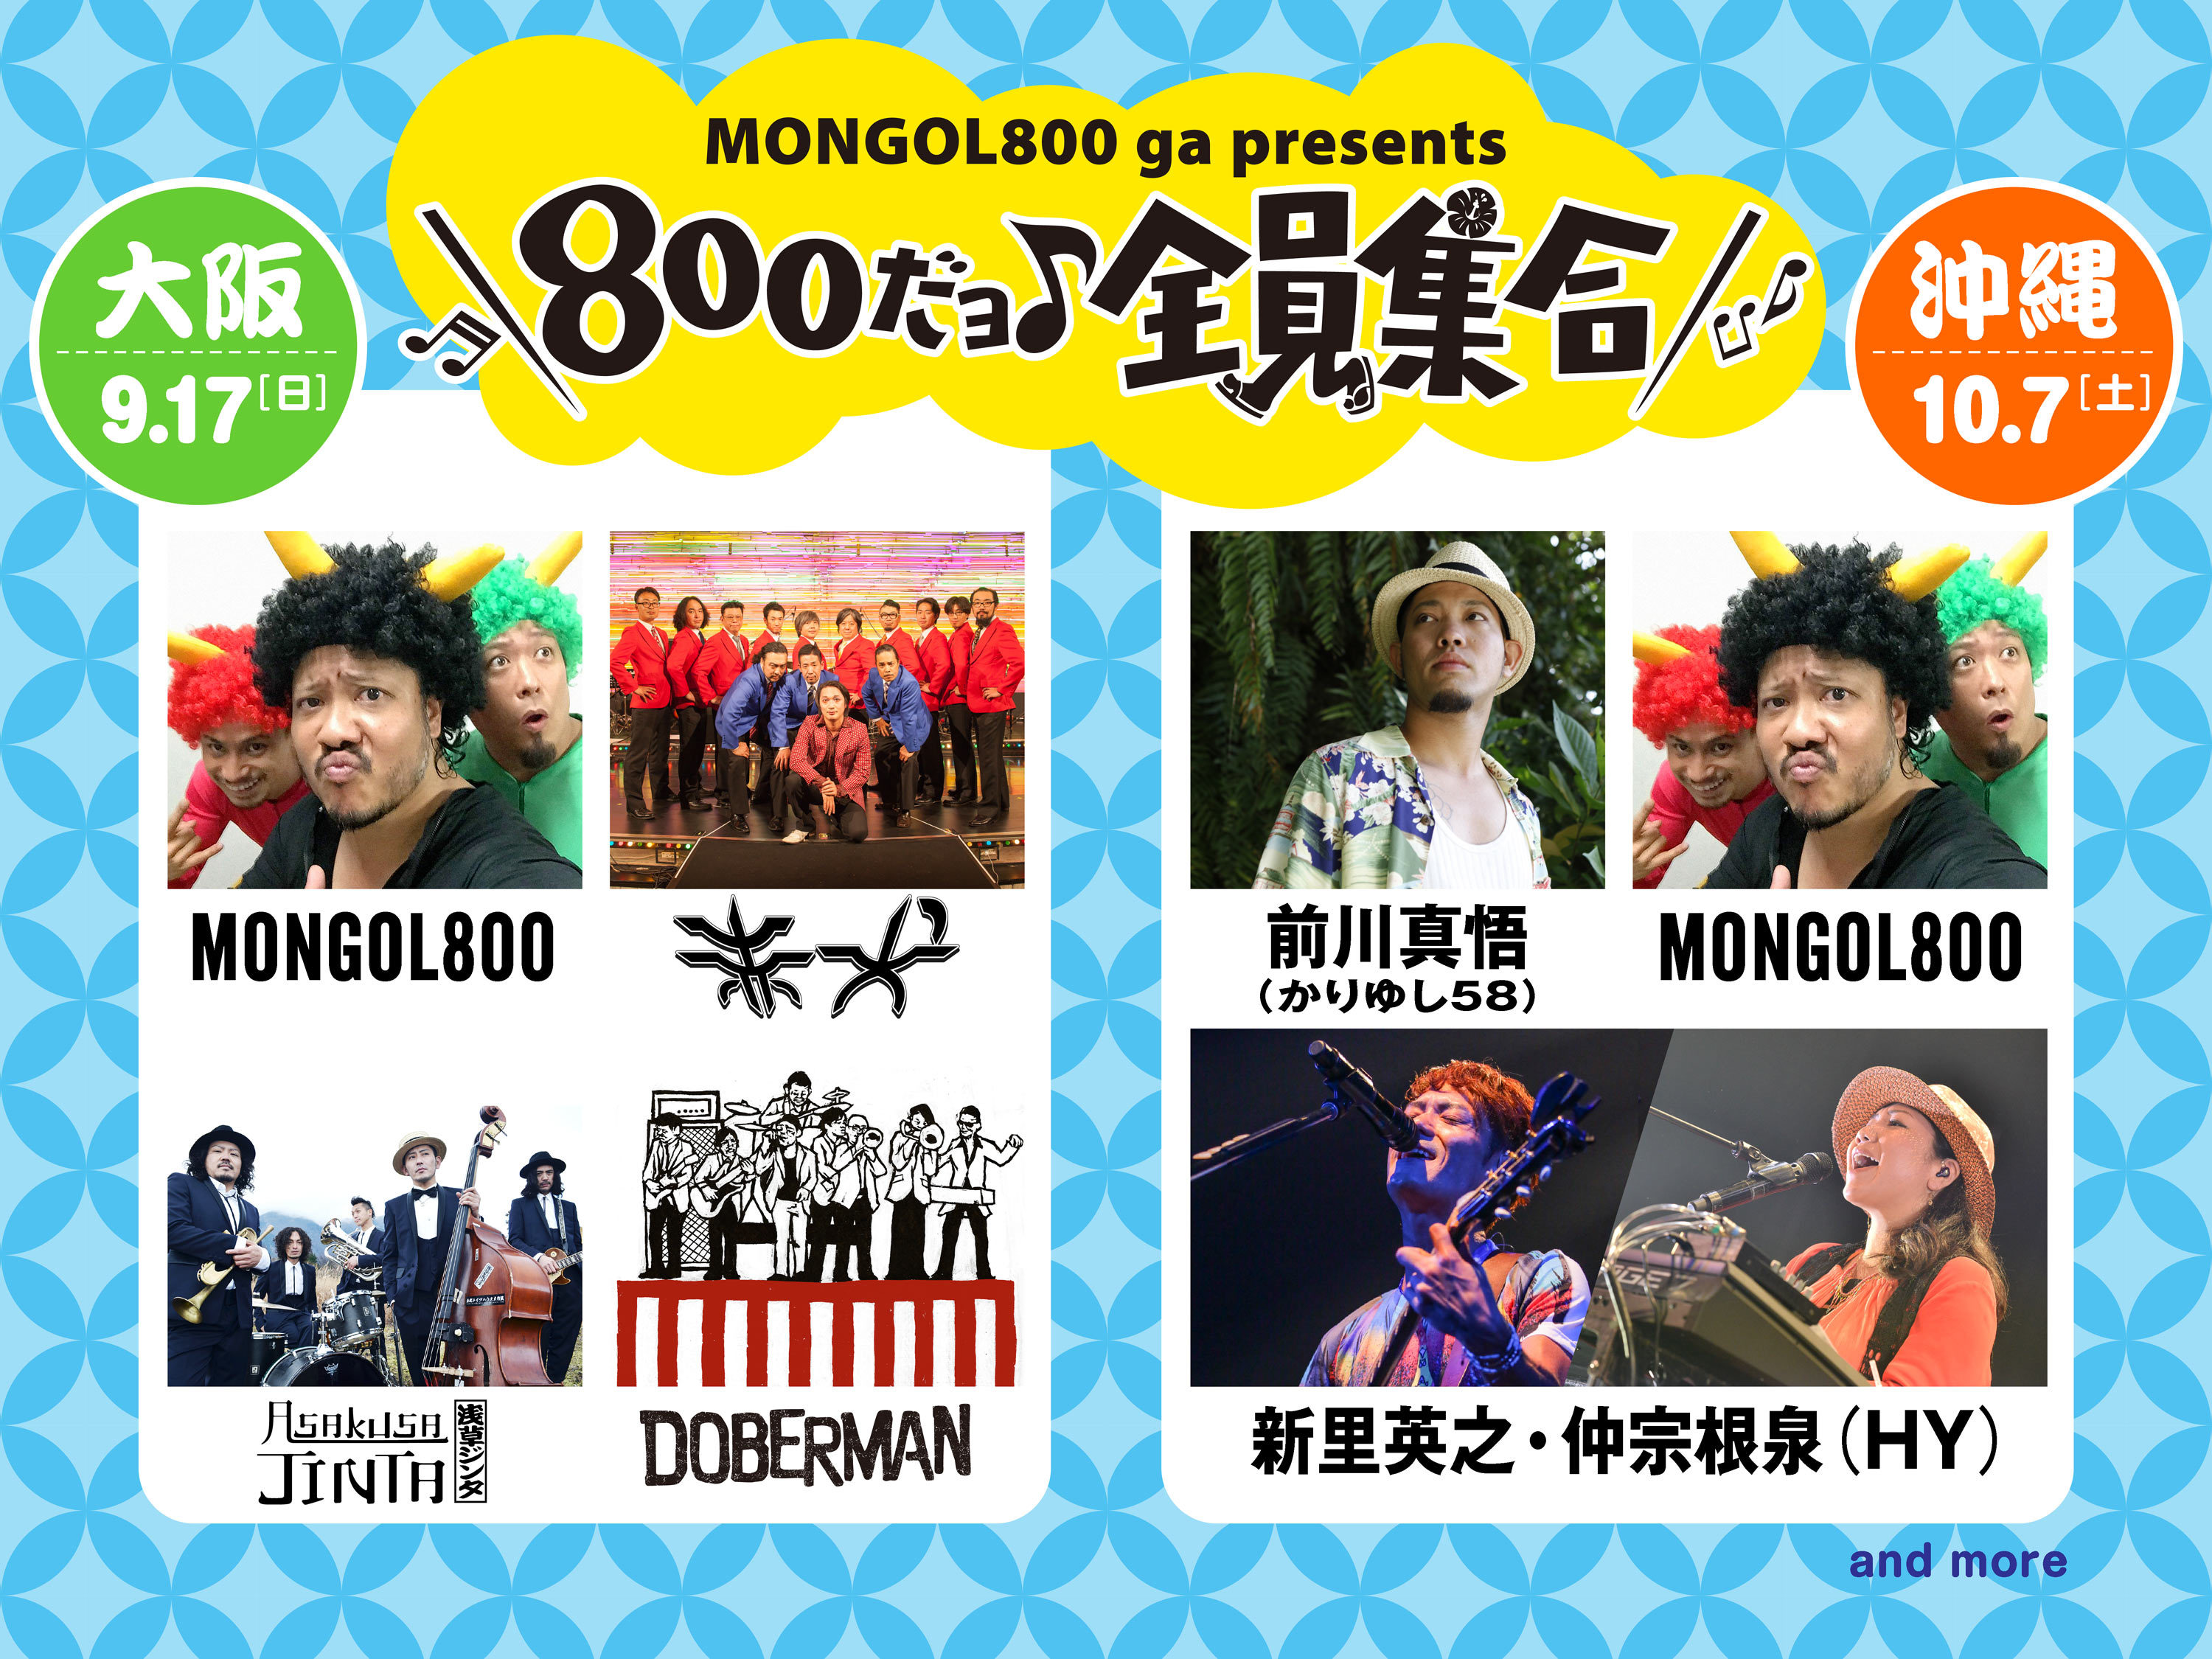 MONGOL800 ga presents『800だョ全員集合!!』